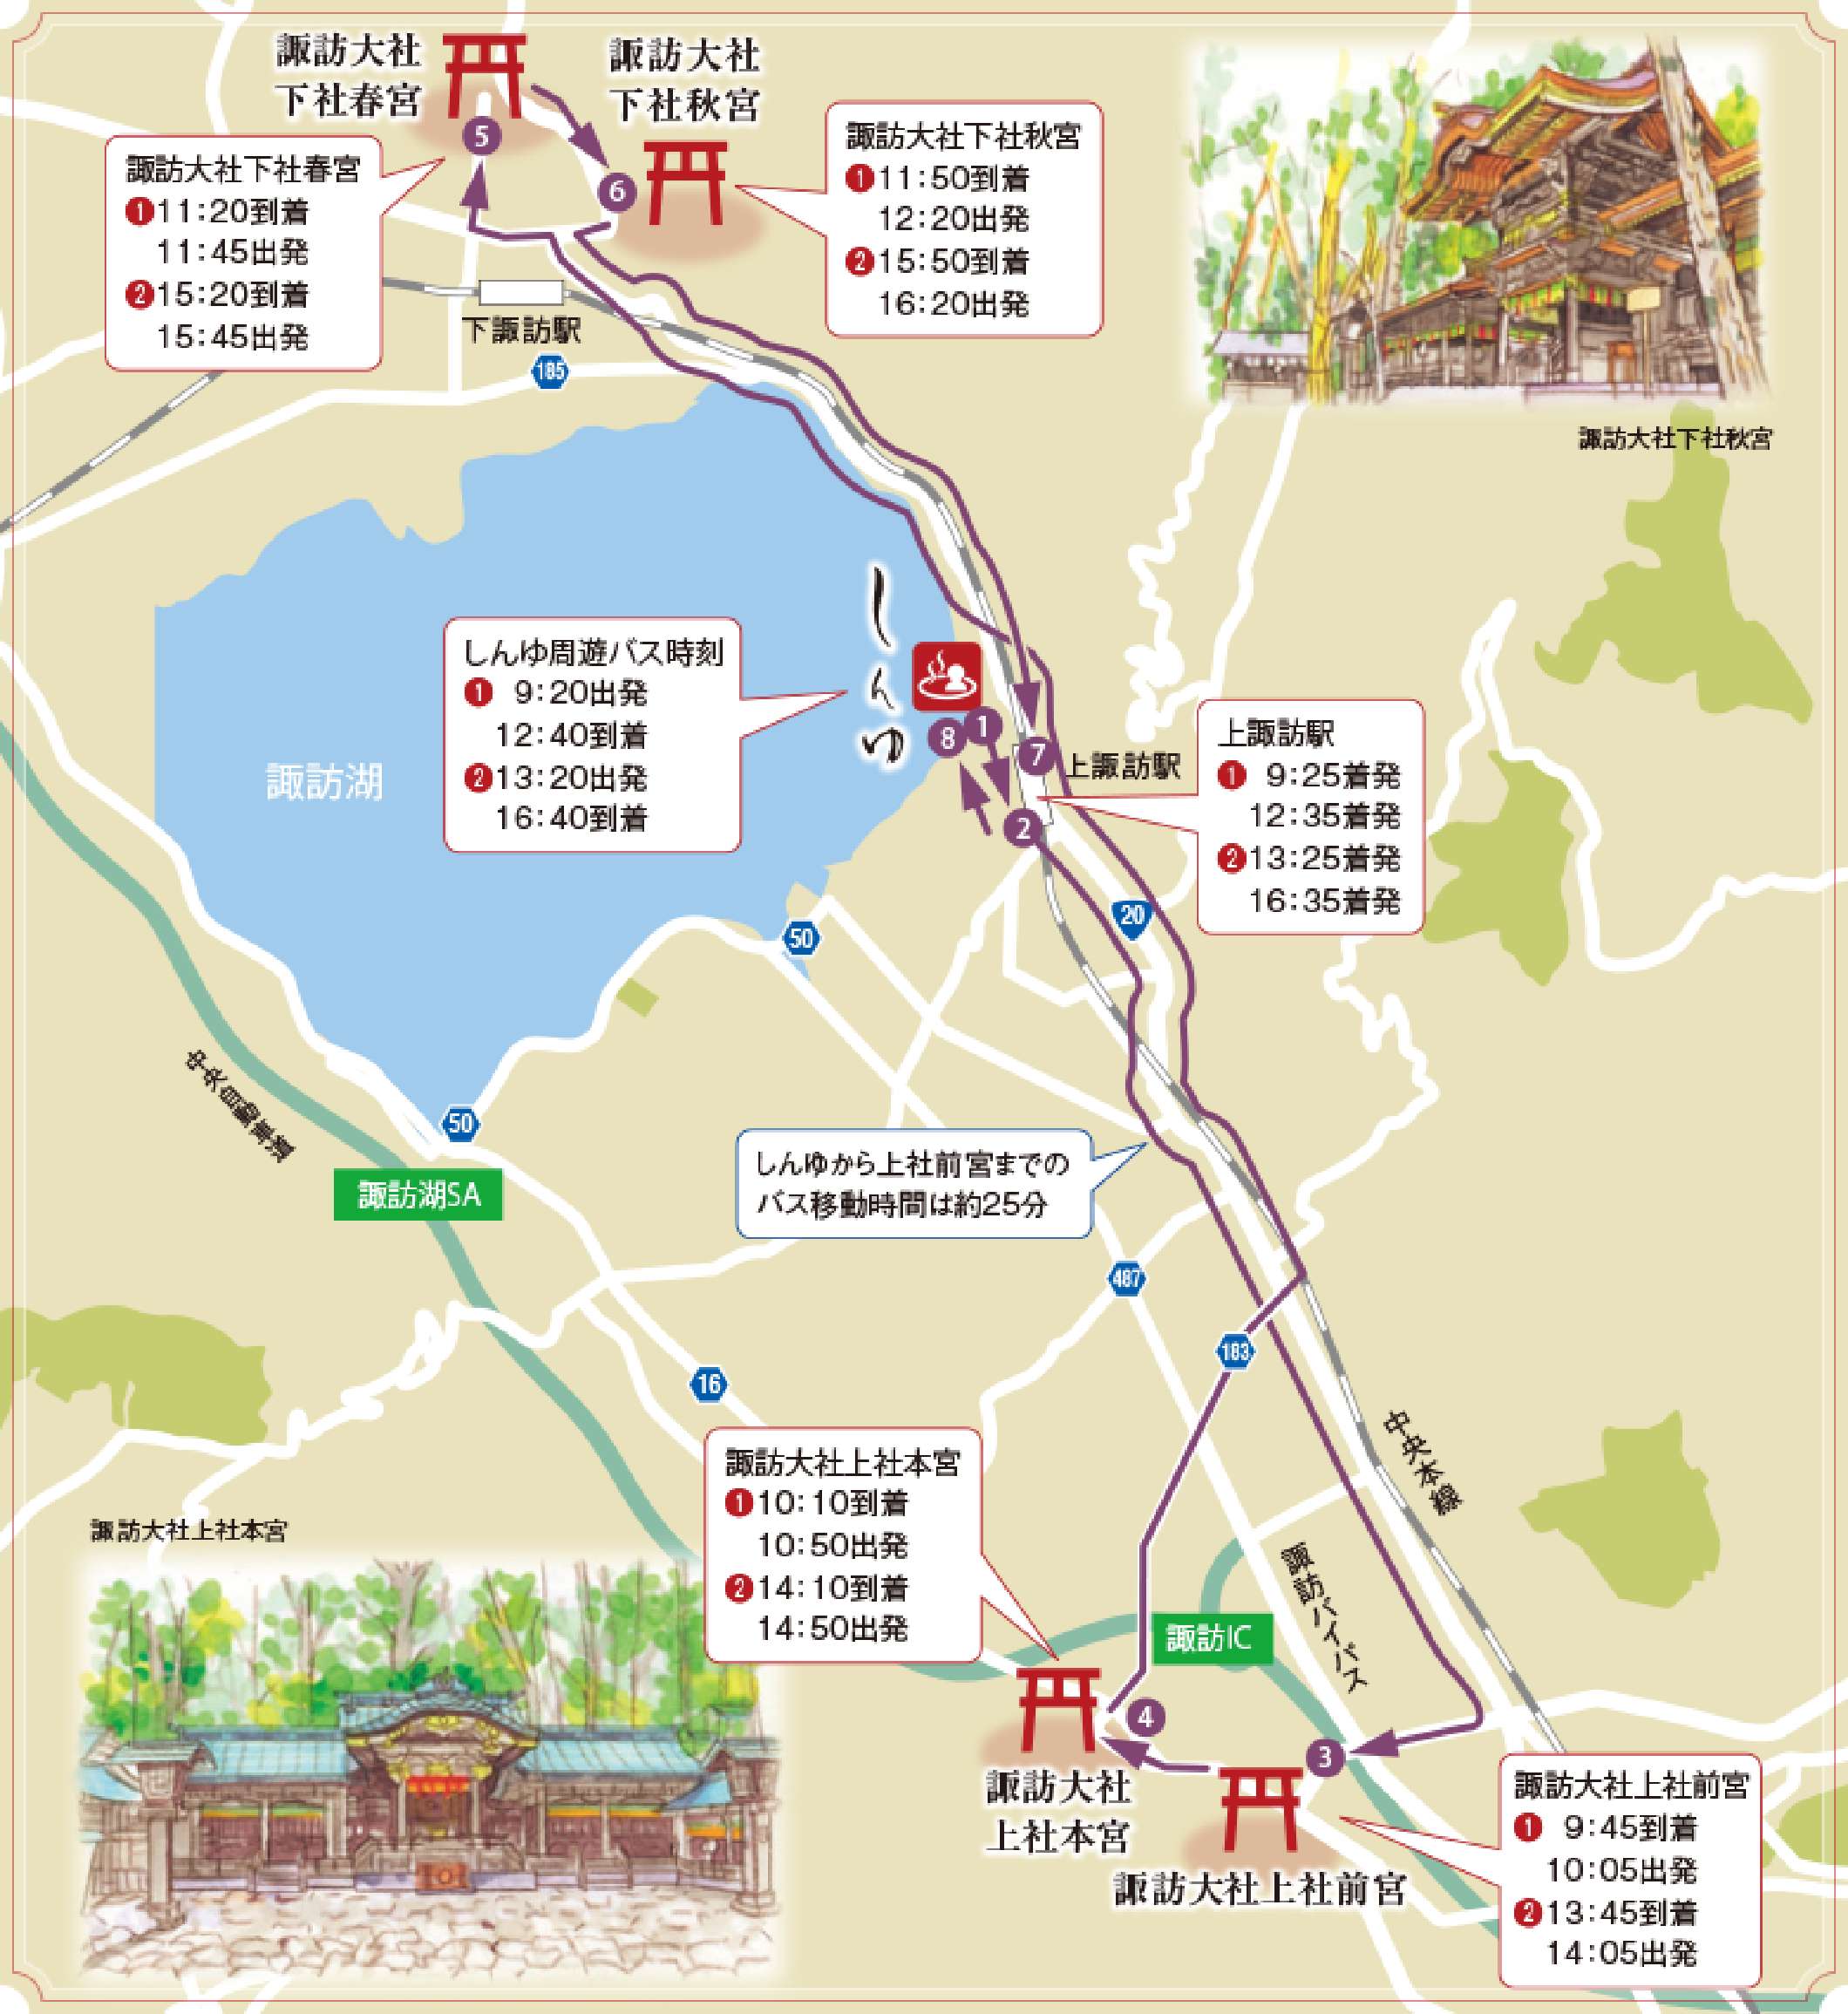 諏訪大社4社を巡る無料参拝バス 周辺地図